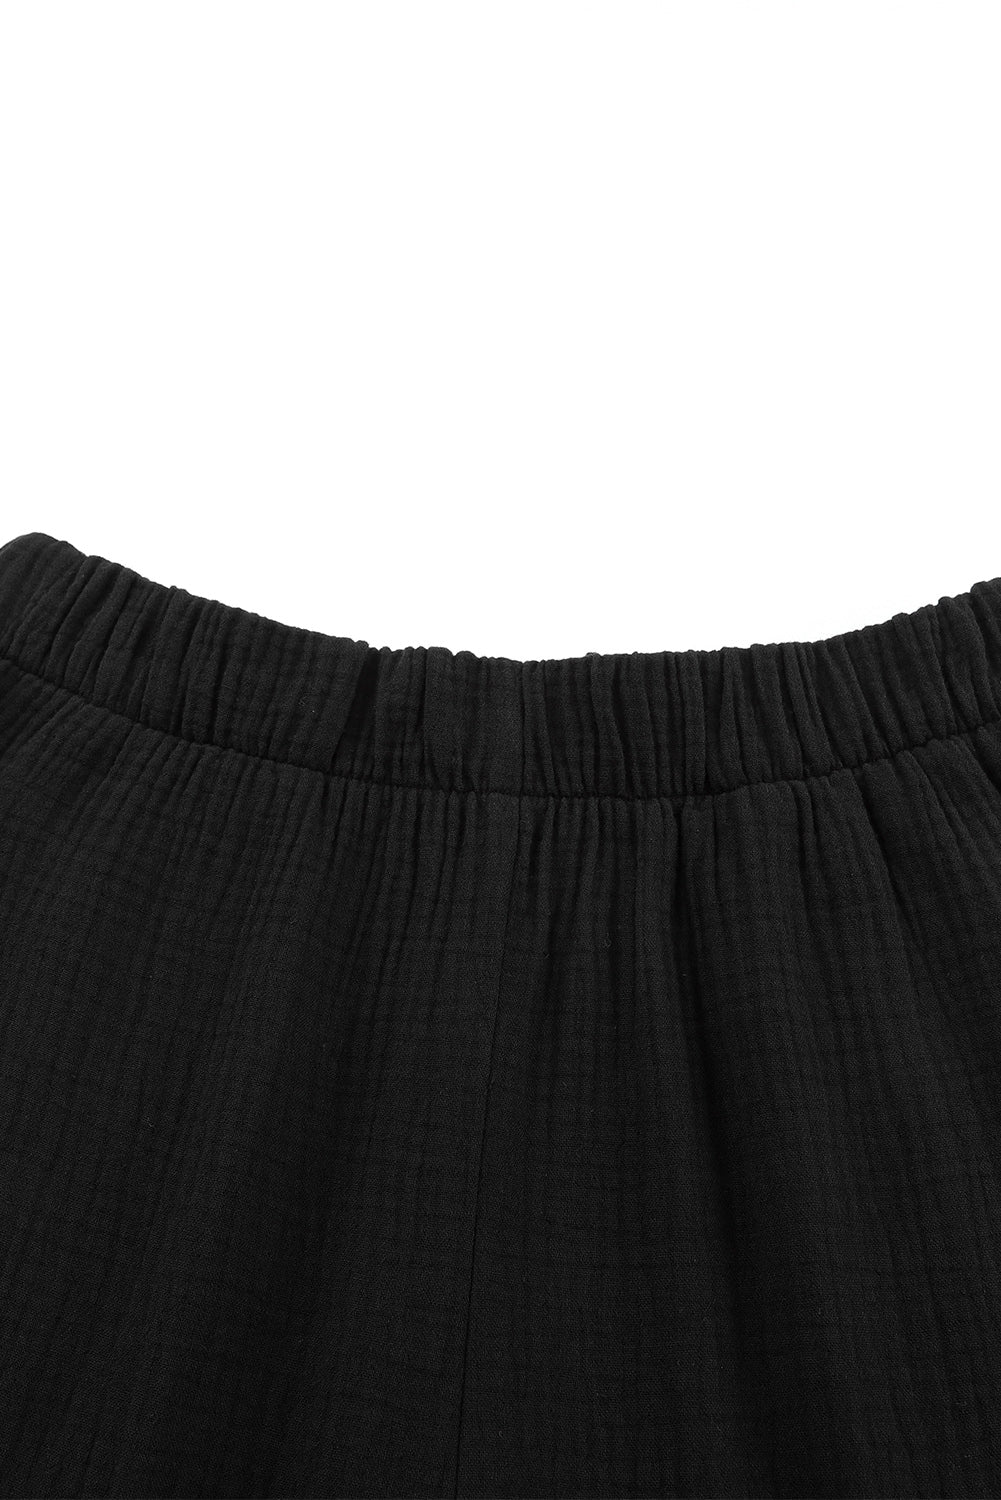 Pantalon noir texturé taille haute à volants et cloche